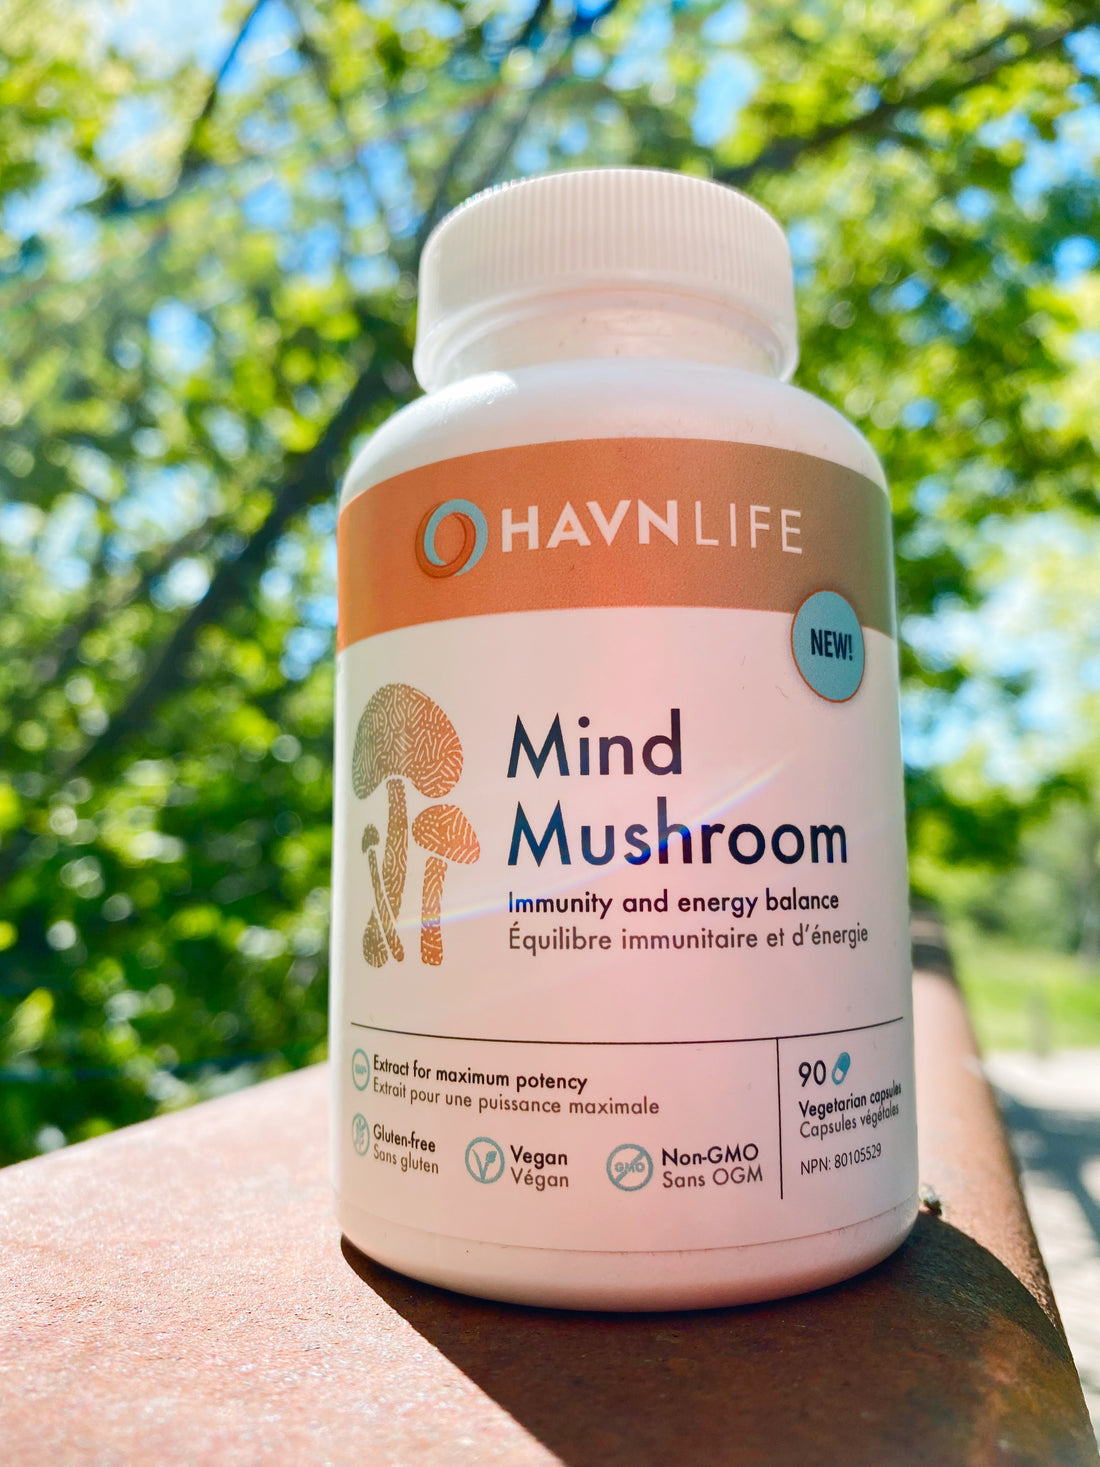 Mind Mushrooms by Havn Life